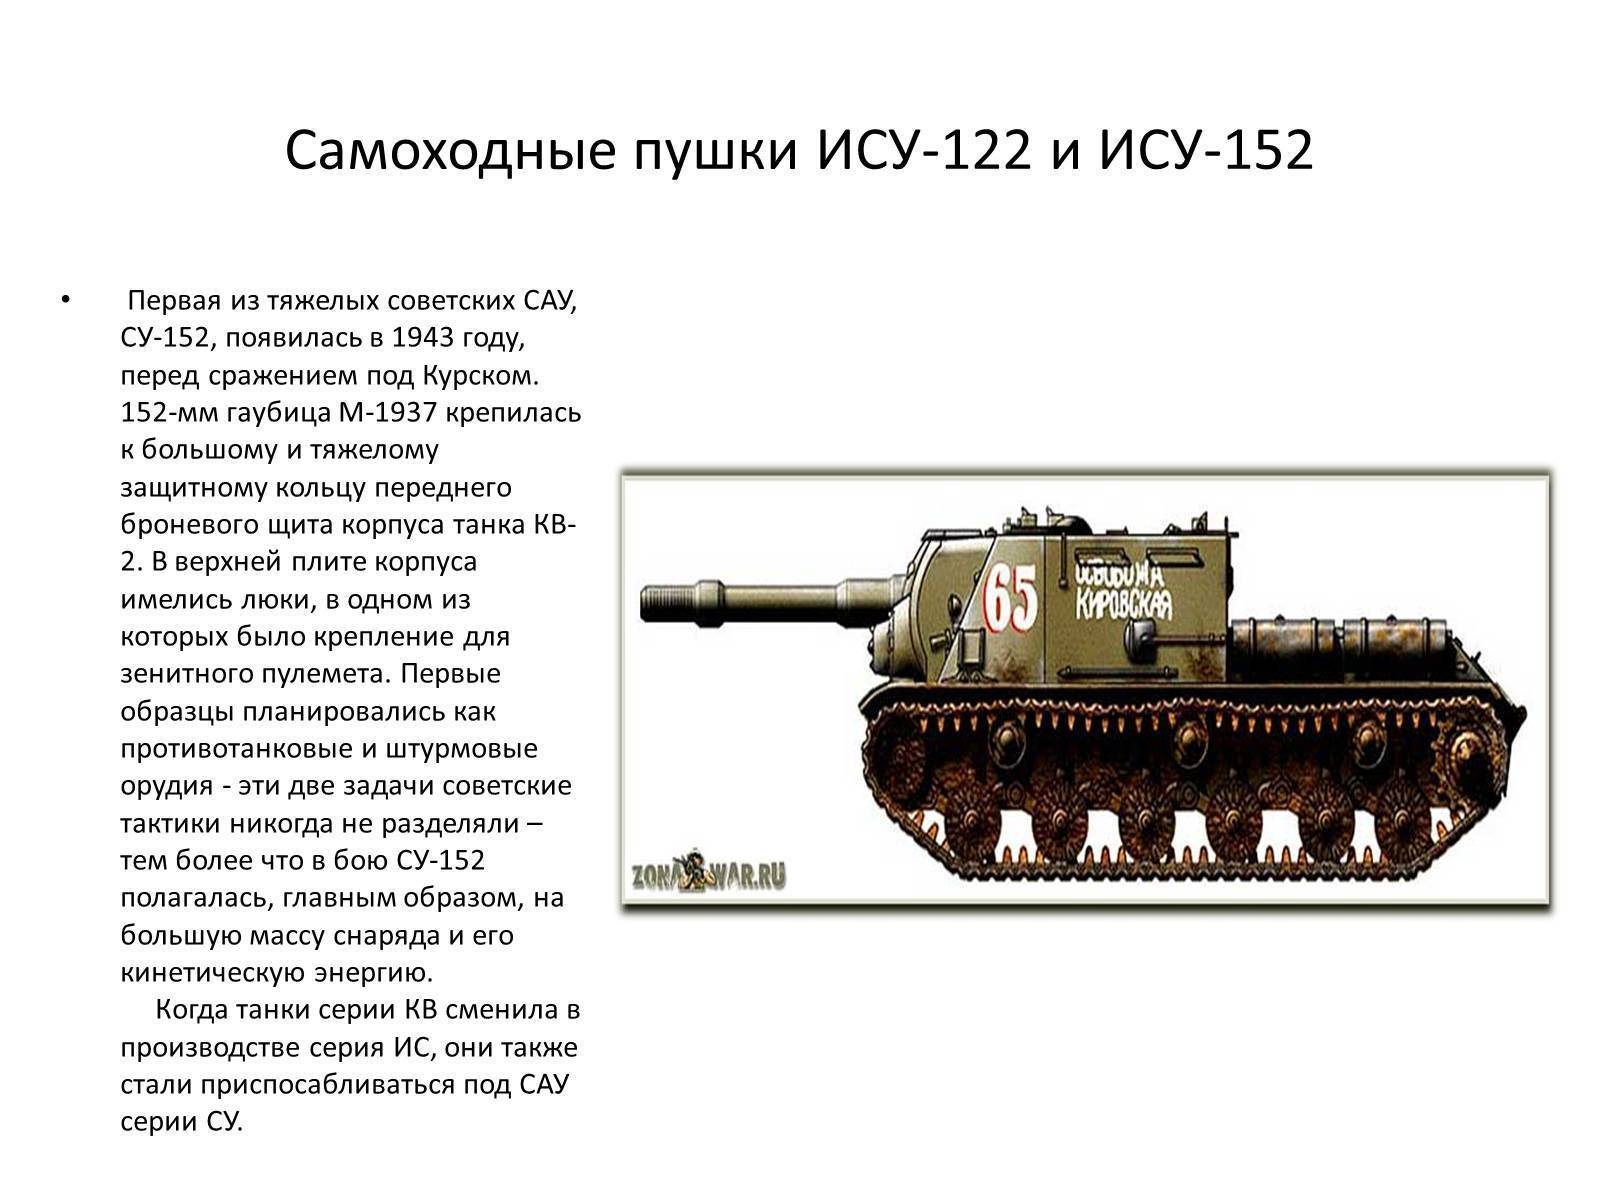 Ису-152: производство и боевое применение